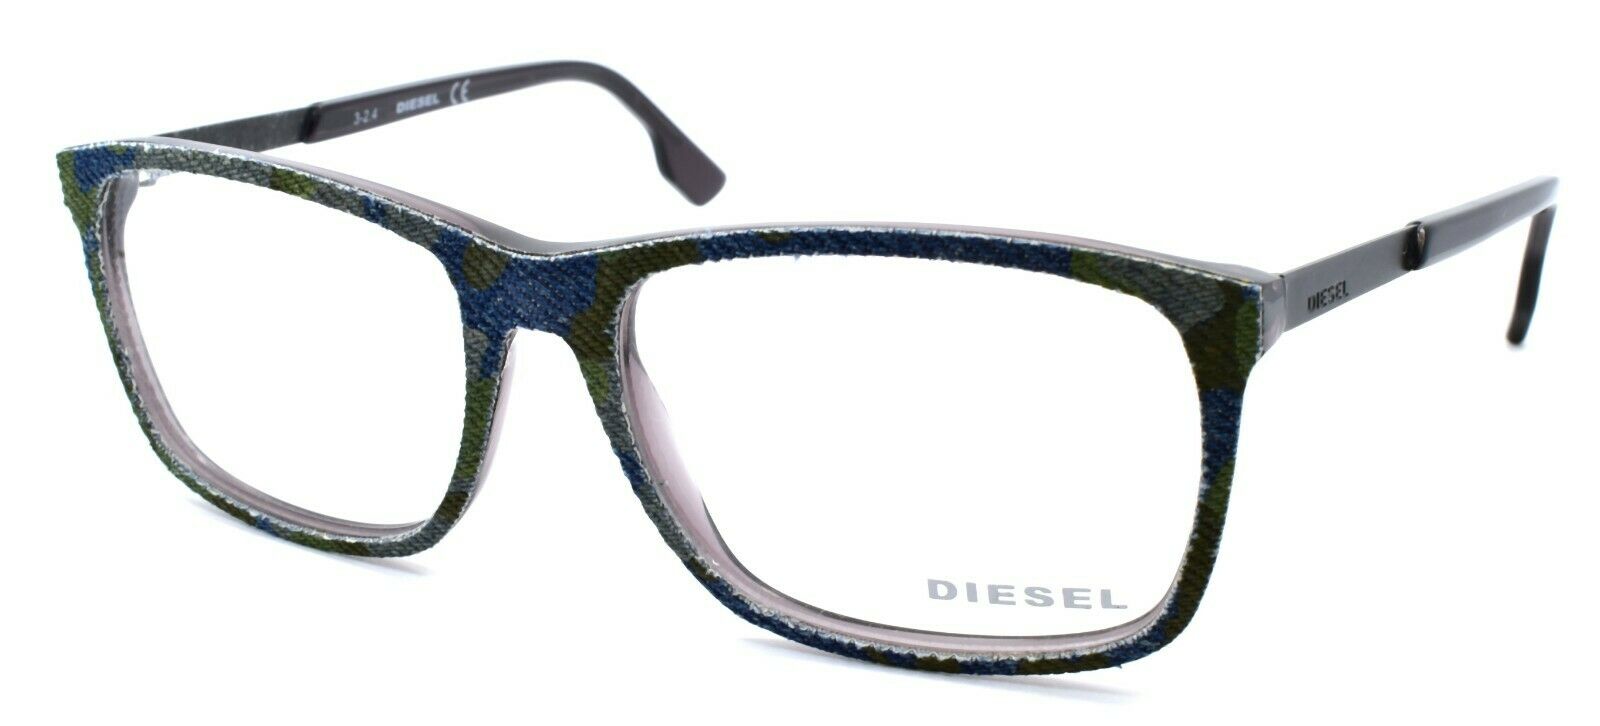 1-Diesel DL5166 003 Men's Eyeglasses Frames 55-16-145 Spotted Denim / Grey-664689683666-IKSpecs